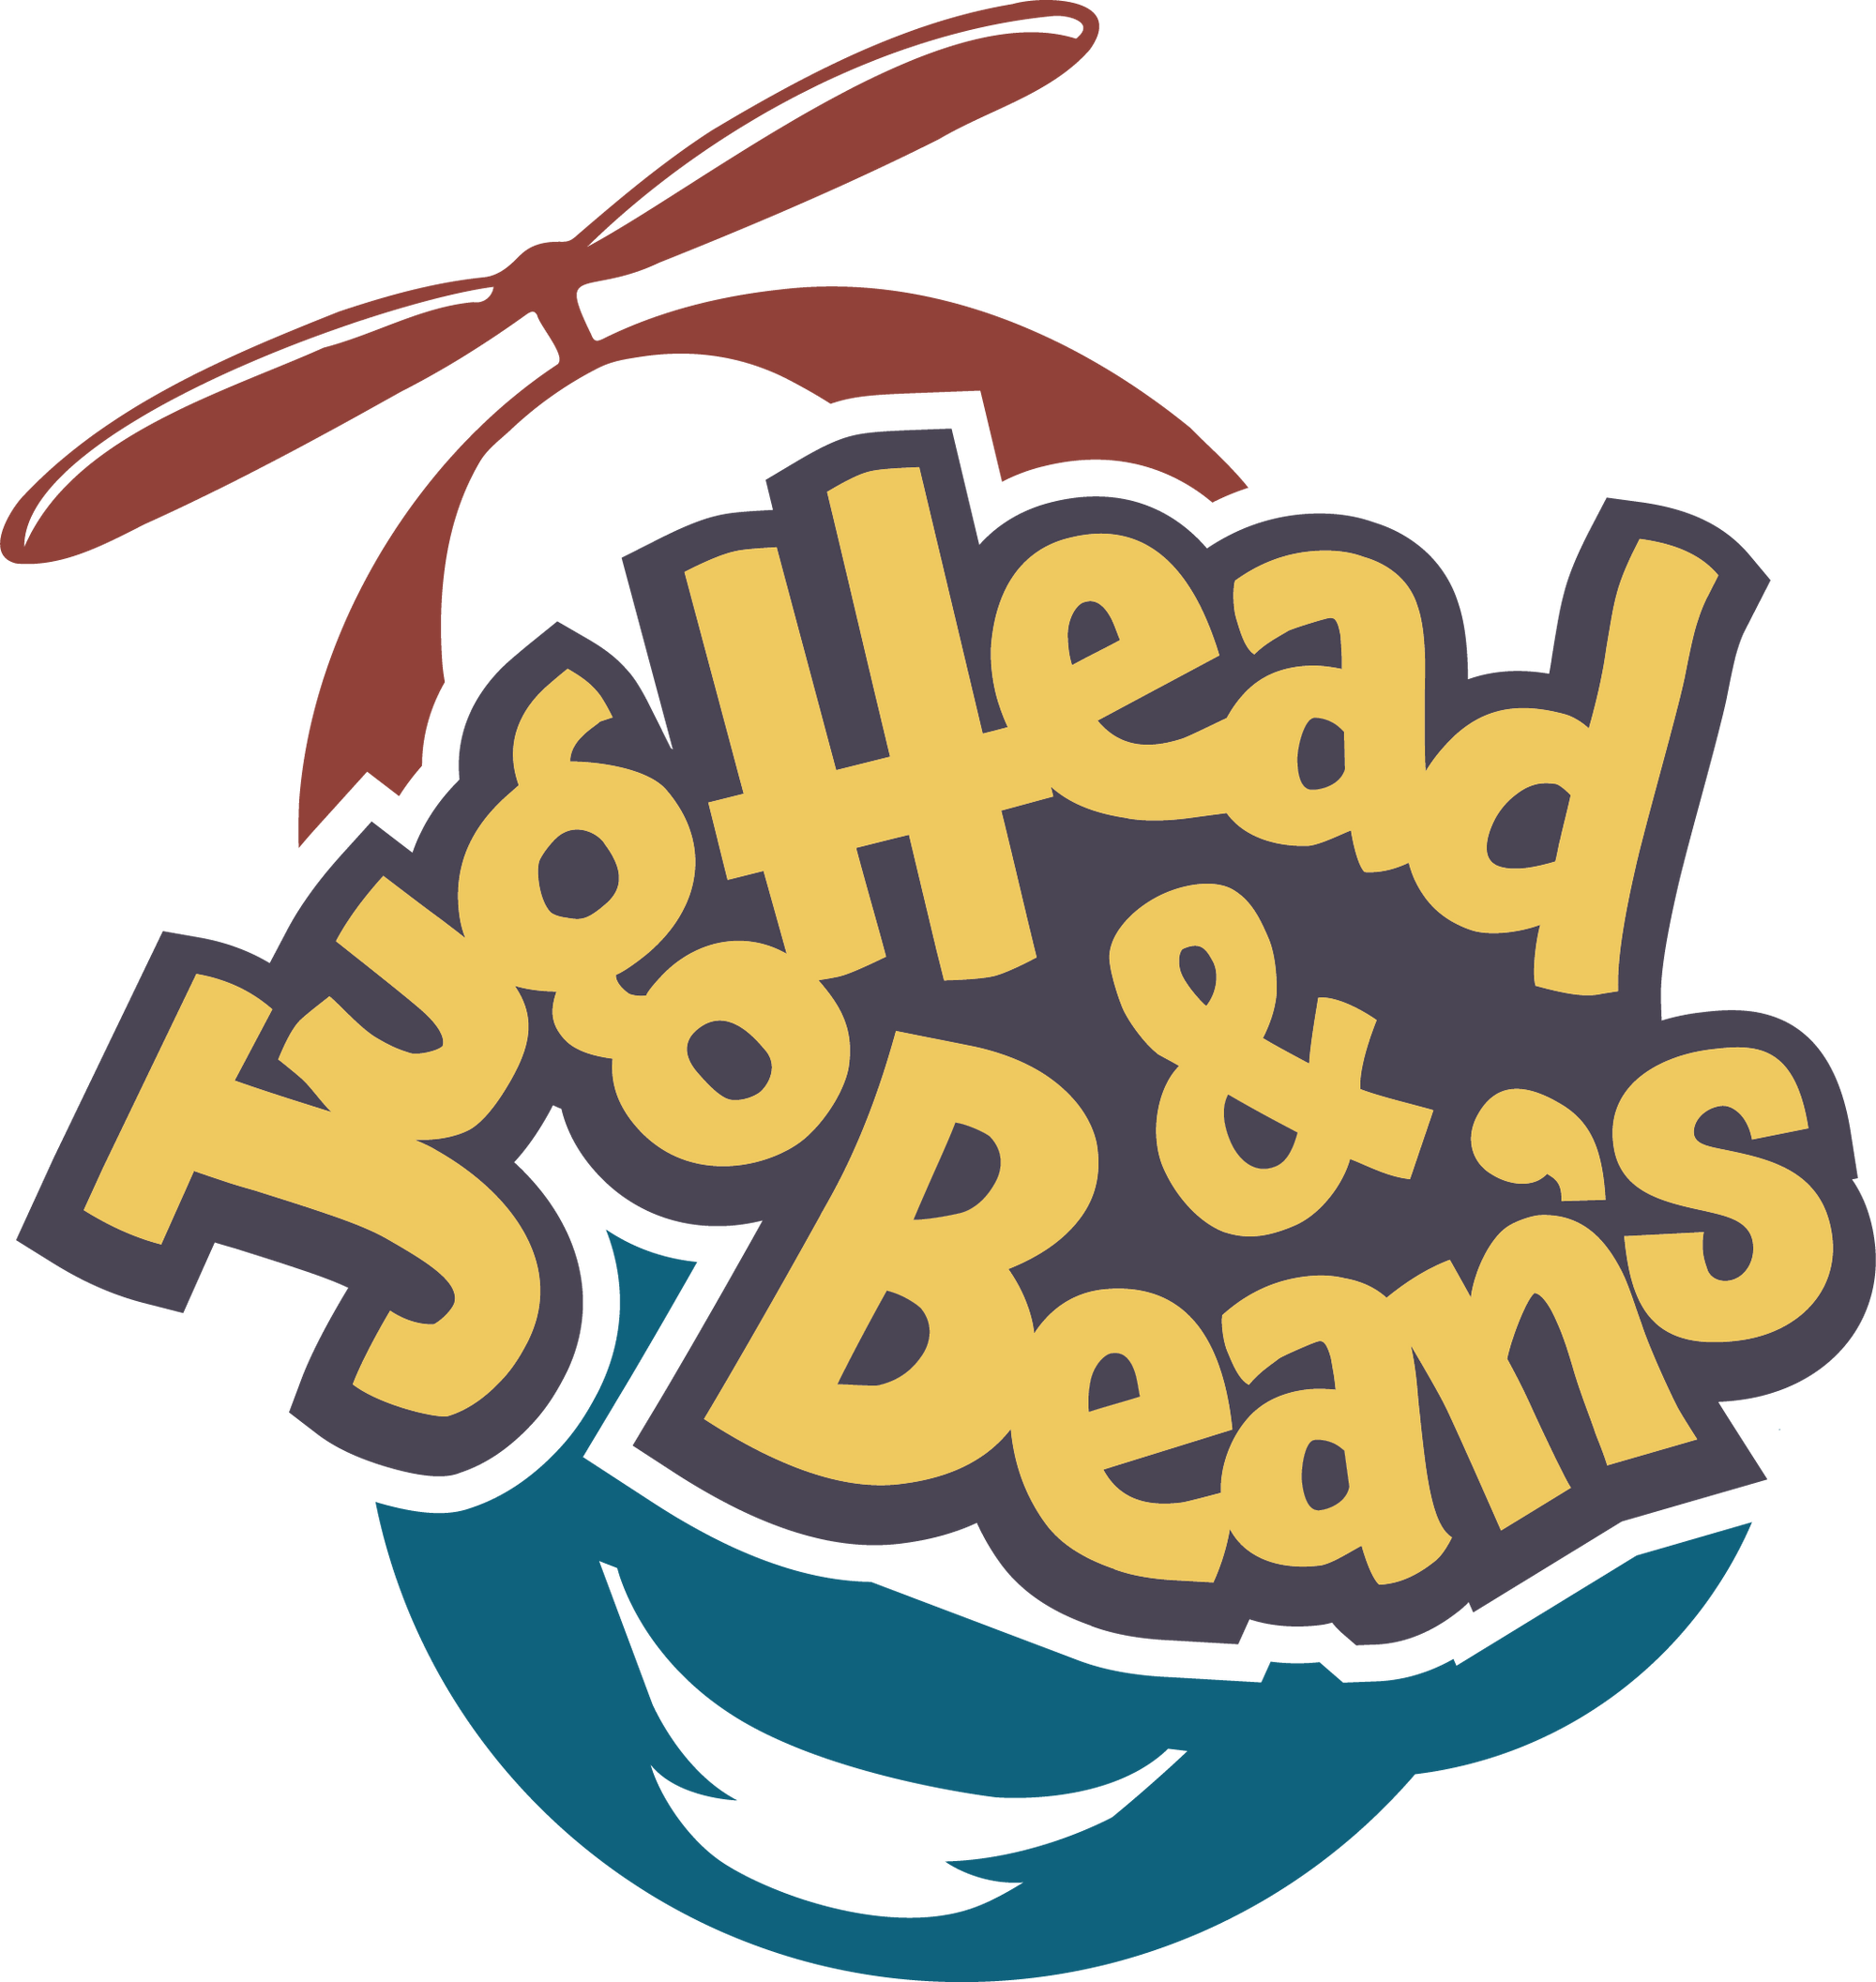 Jughead and Bean's 